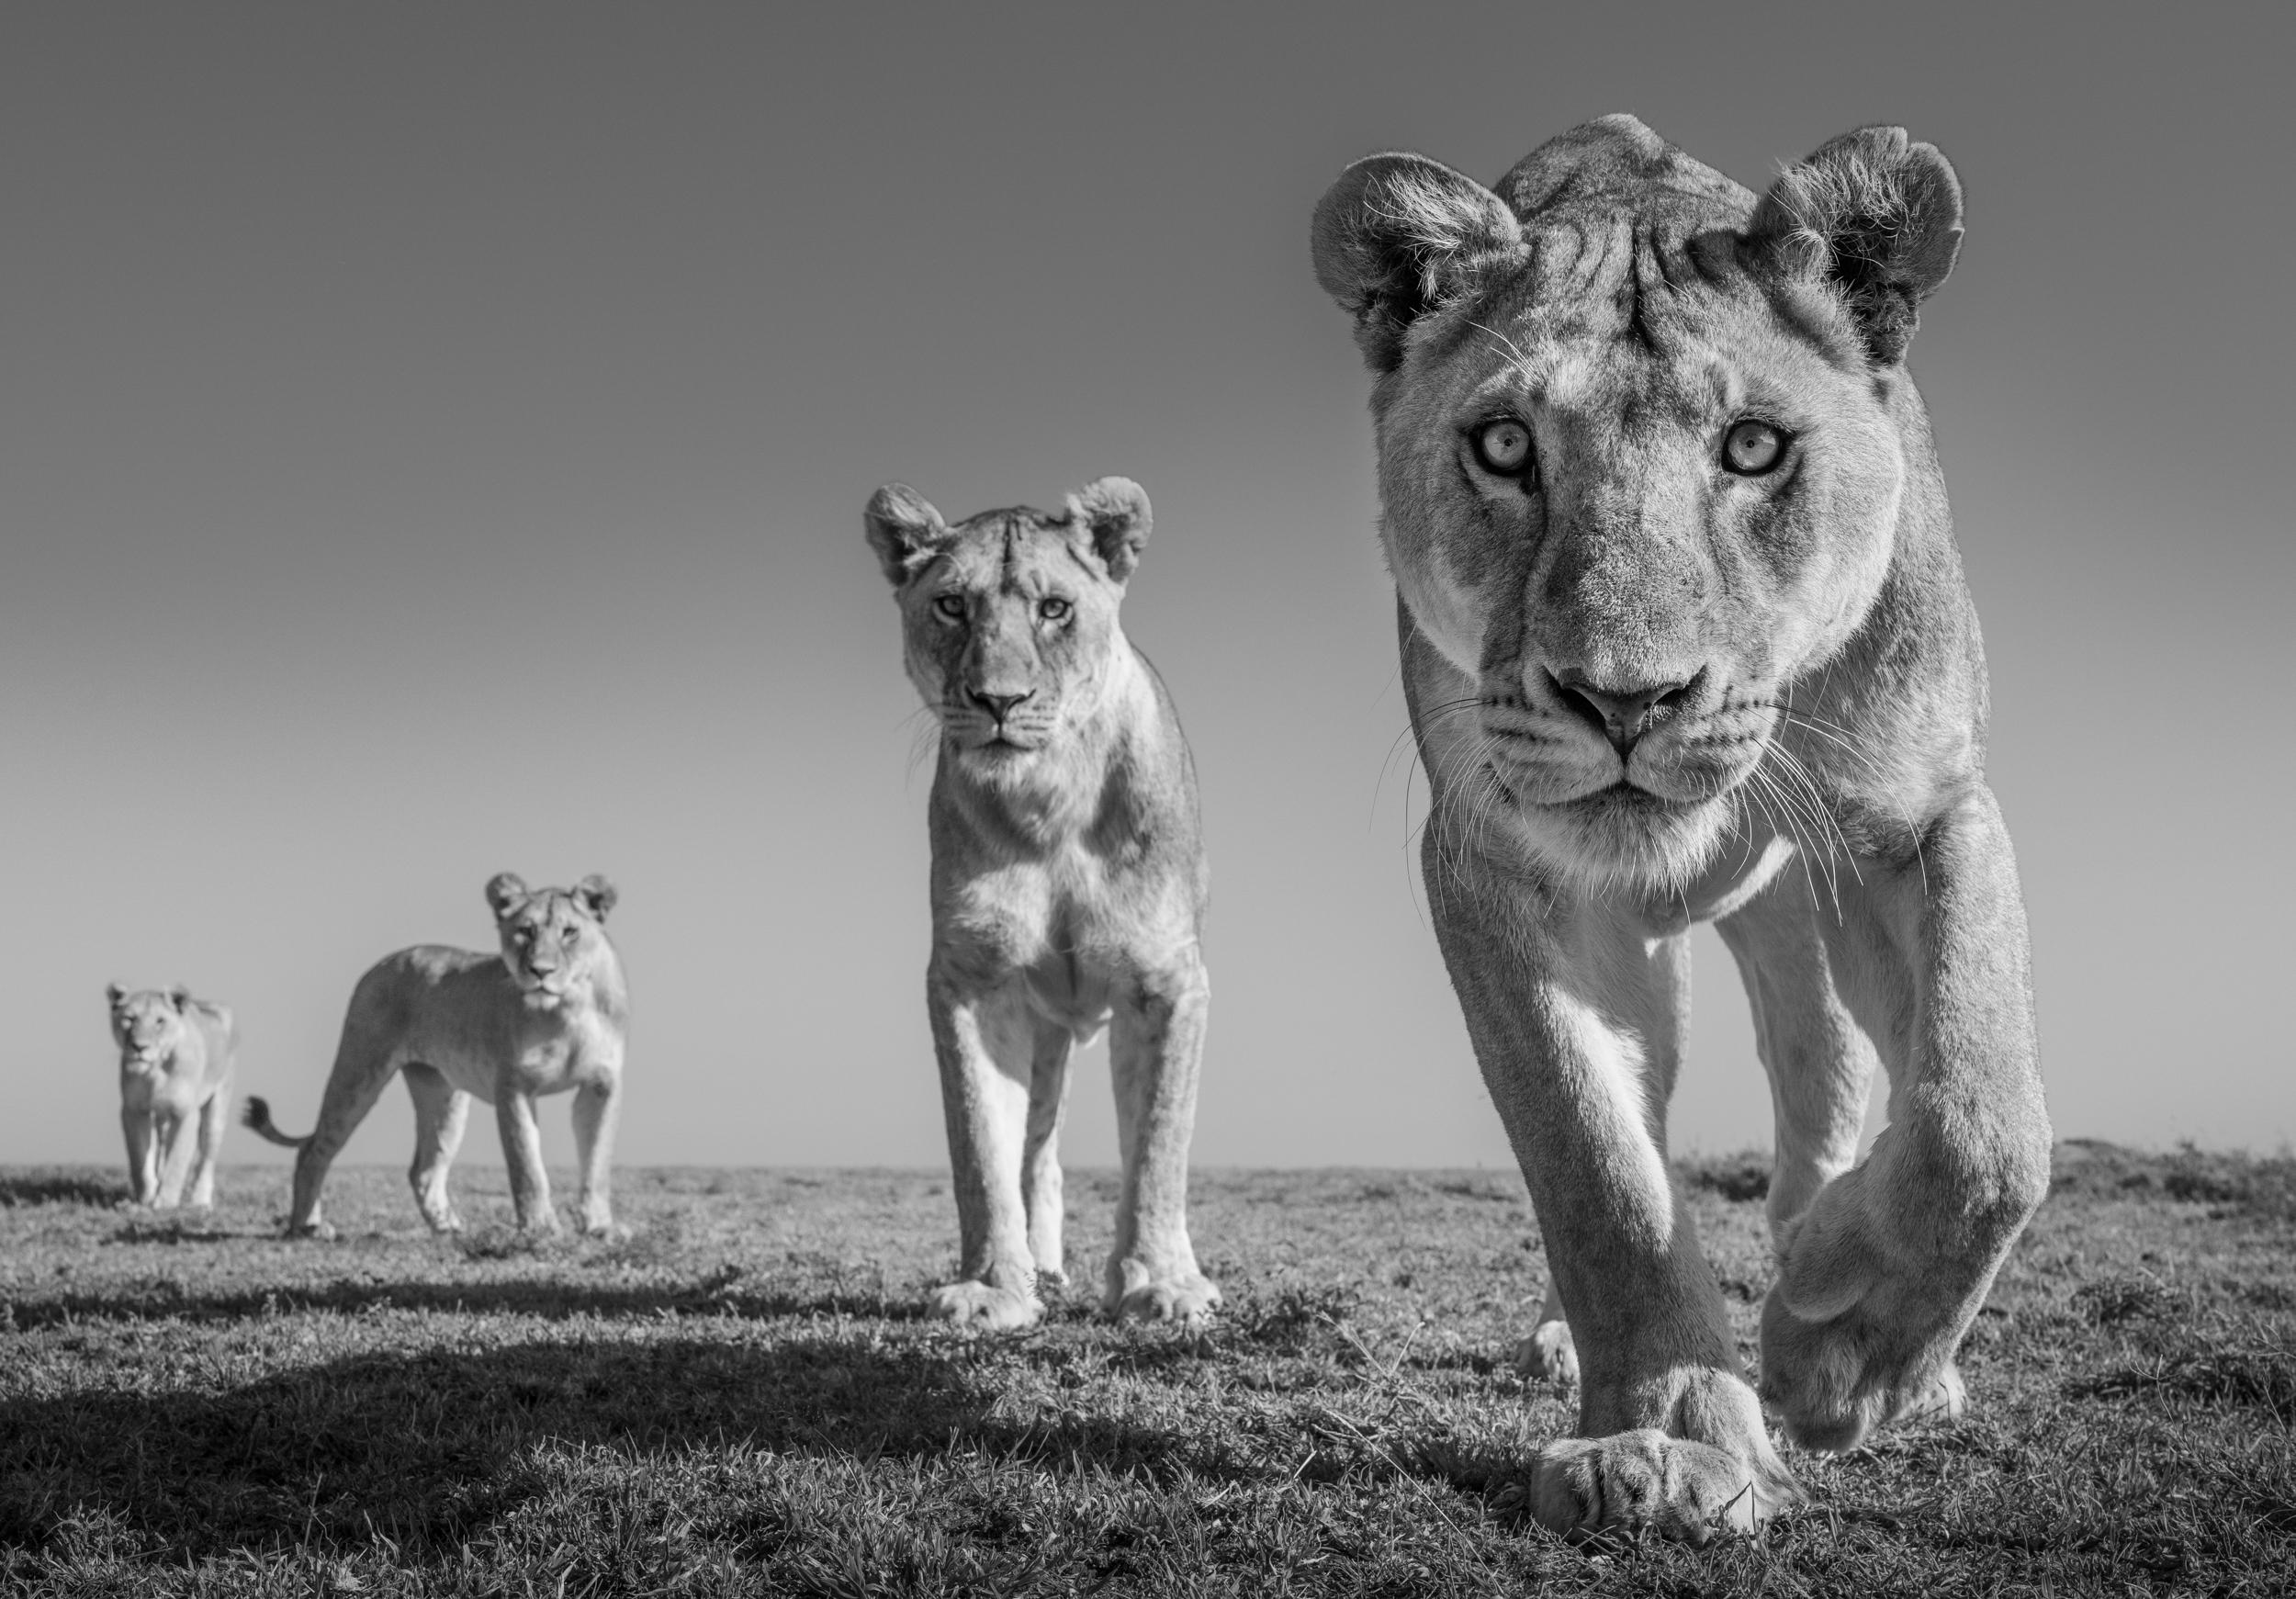 Verfügbare Größen:
18" x 25.85" - Auflage von 8
28" x 40.21" - Auflage von 8
38" x 54.57" - Auflage von 6
48" x 68.93" - Auflage von 6

Es wird angenommen, dass die Serengeti mit über 3.000 Tieren die größte Löwenpopulation Afrikas beherbergt und